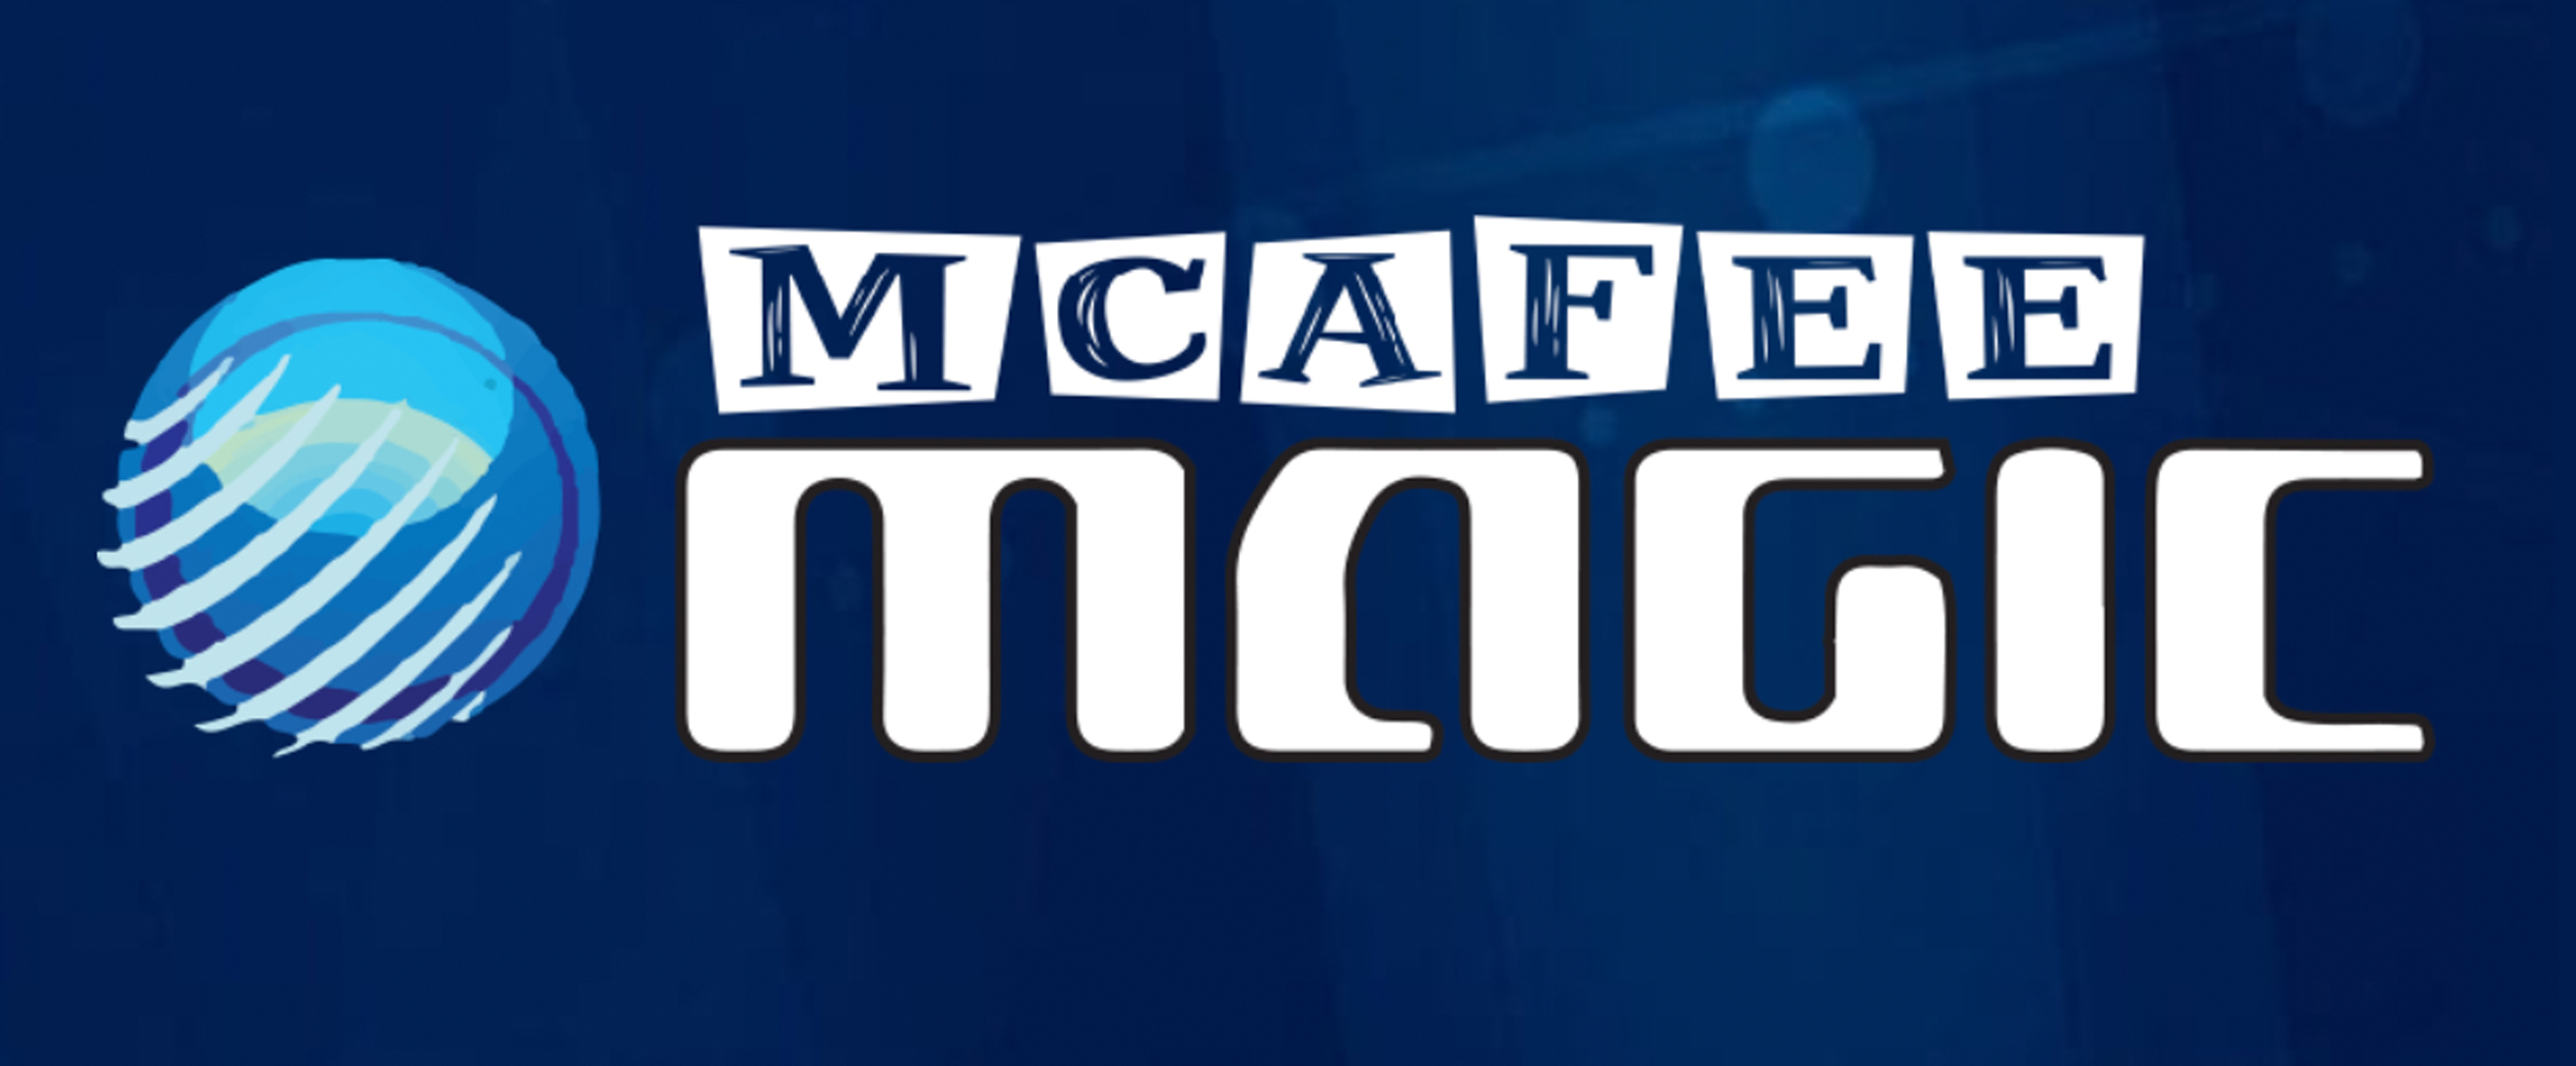 John McAfee เปิดตัวตลาด ‘Magic’ แพลตฟอร์มซื้อขายคริปโทตัวใหม่